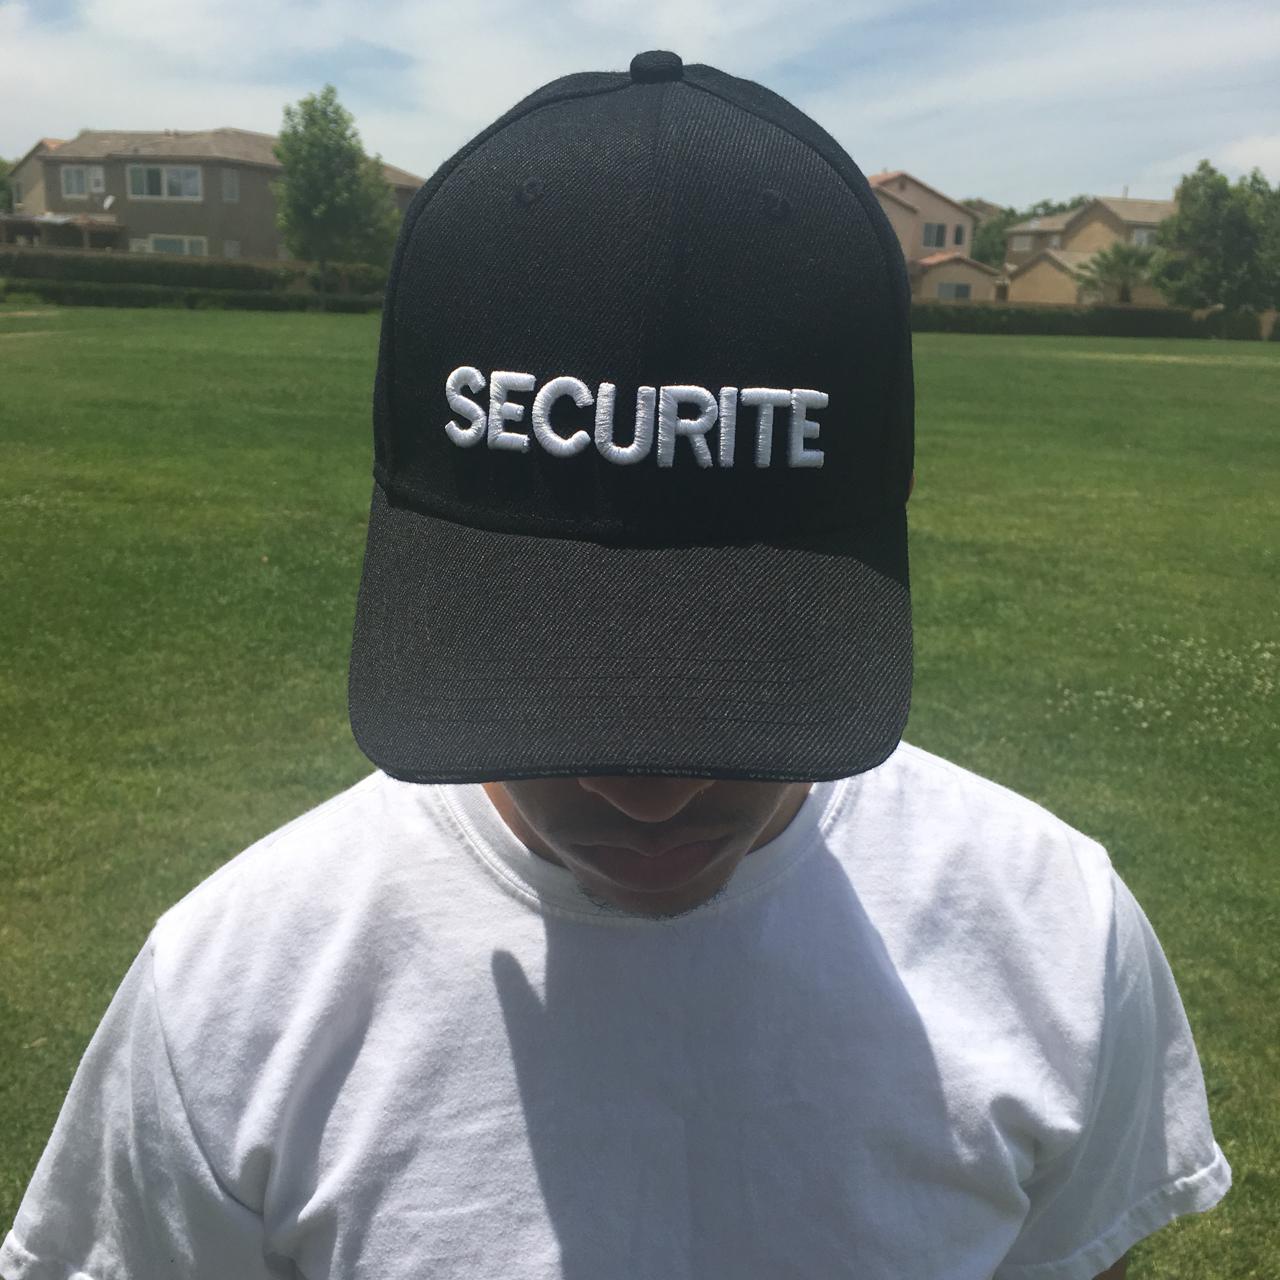 Vetements Black ”Securite” Cap, 100% Authentic...